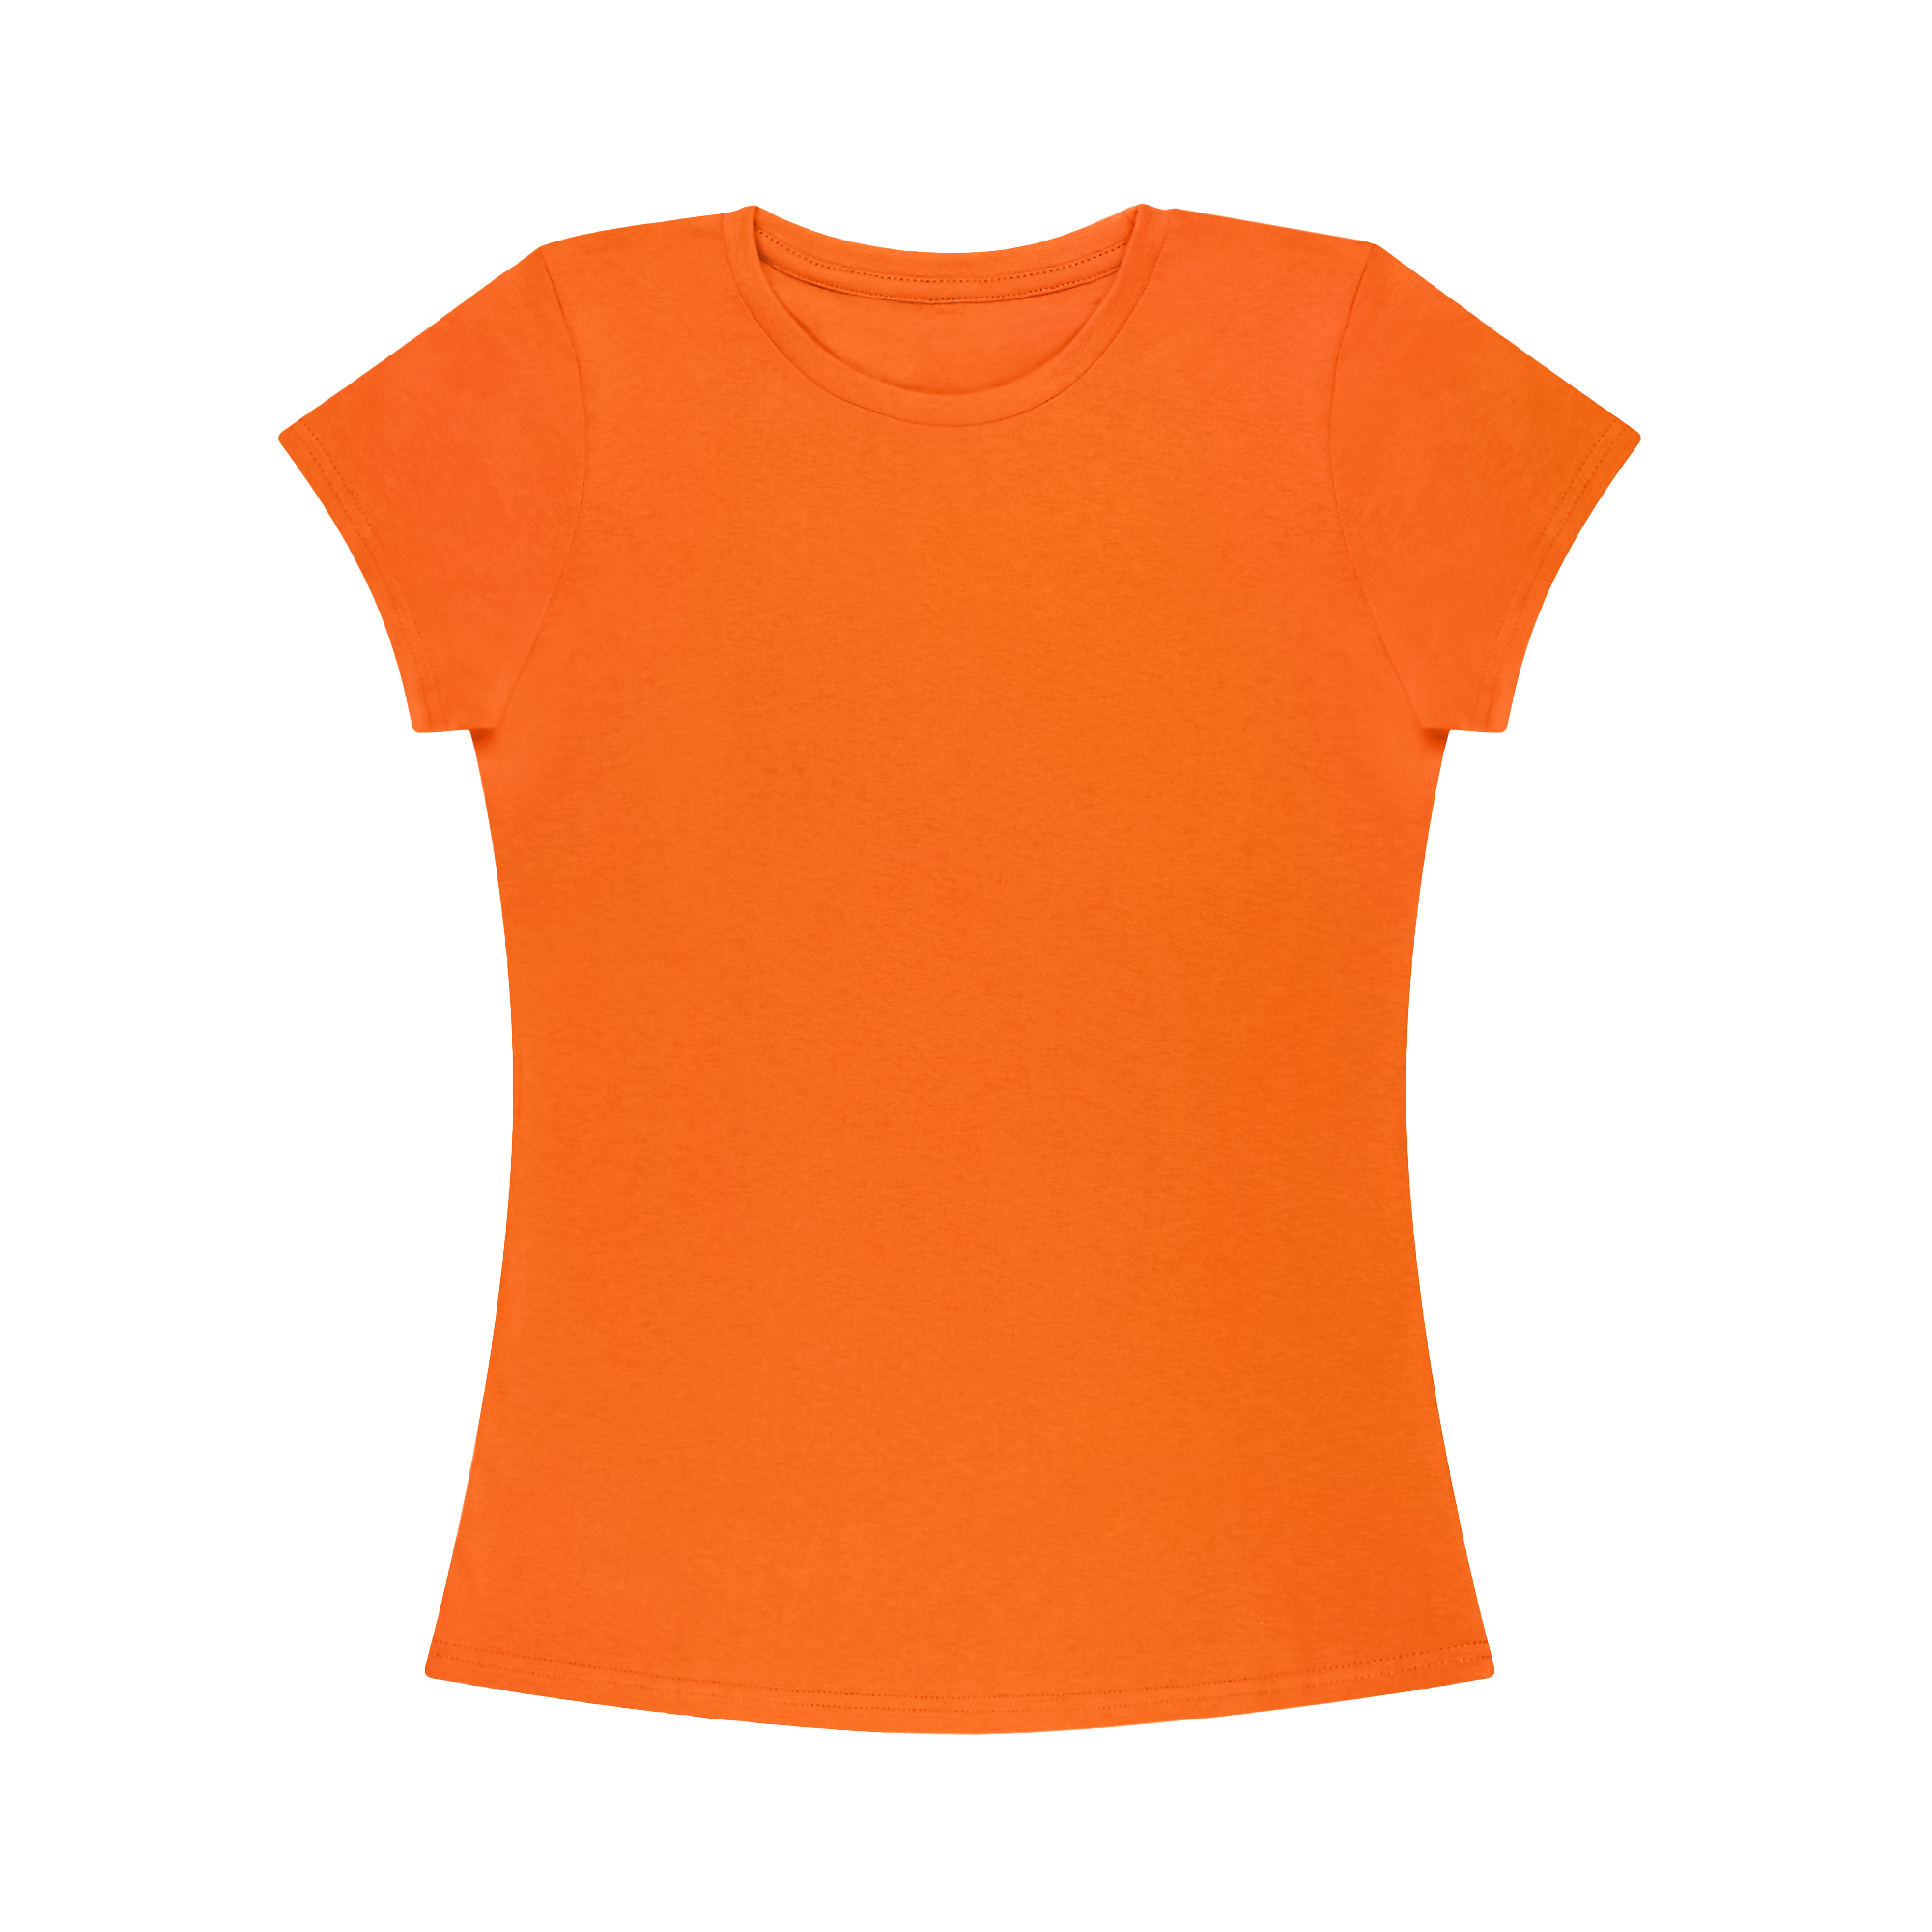 Футболка женская AMADEY classic оранжевая   44-46 M, цвет оранжевый, размер M - фото 1